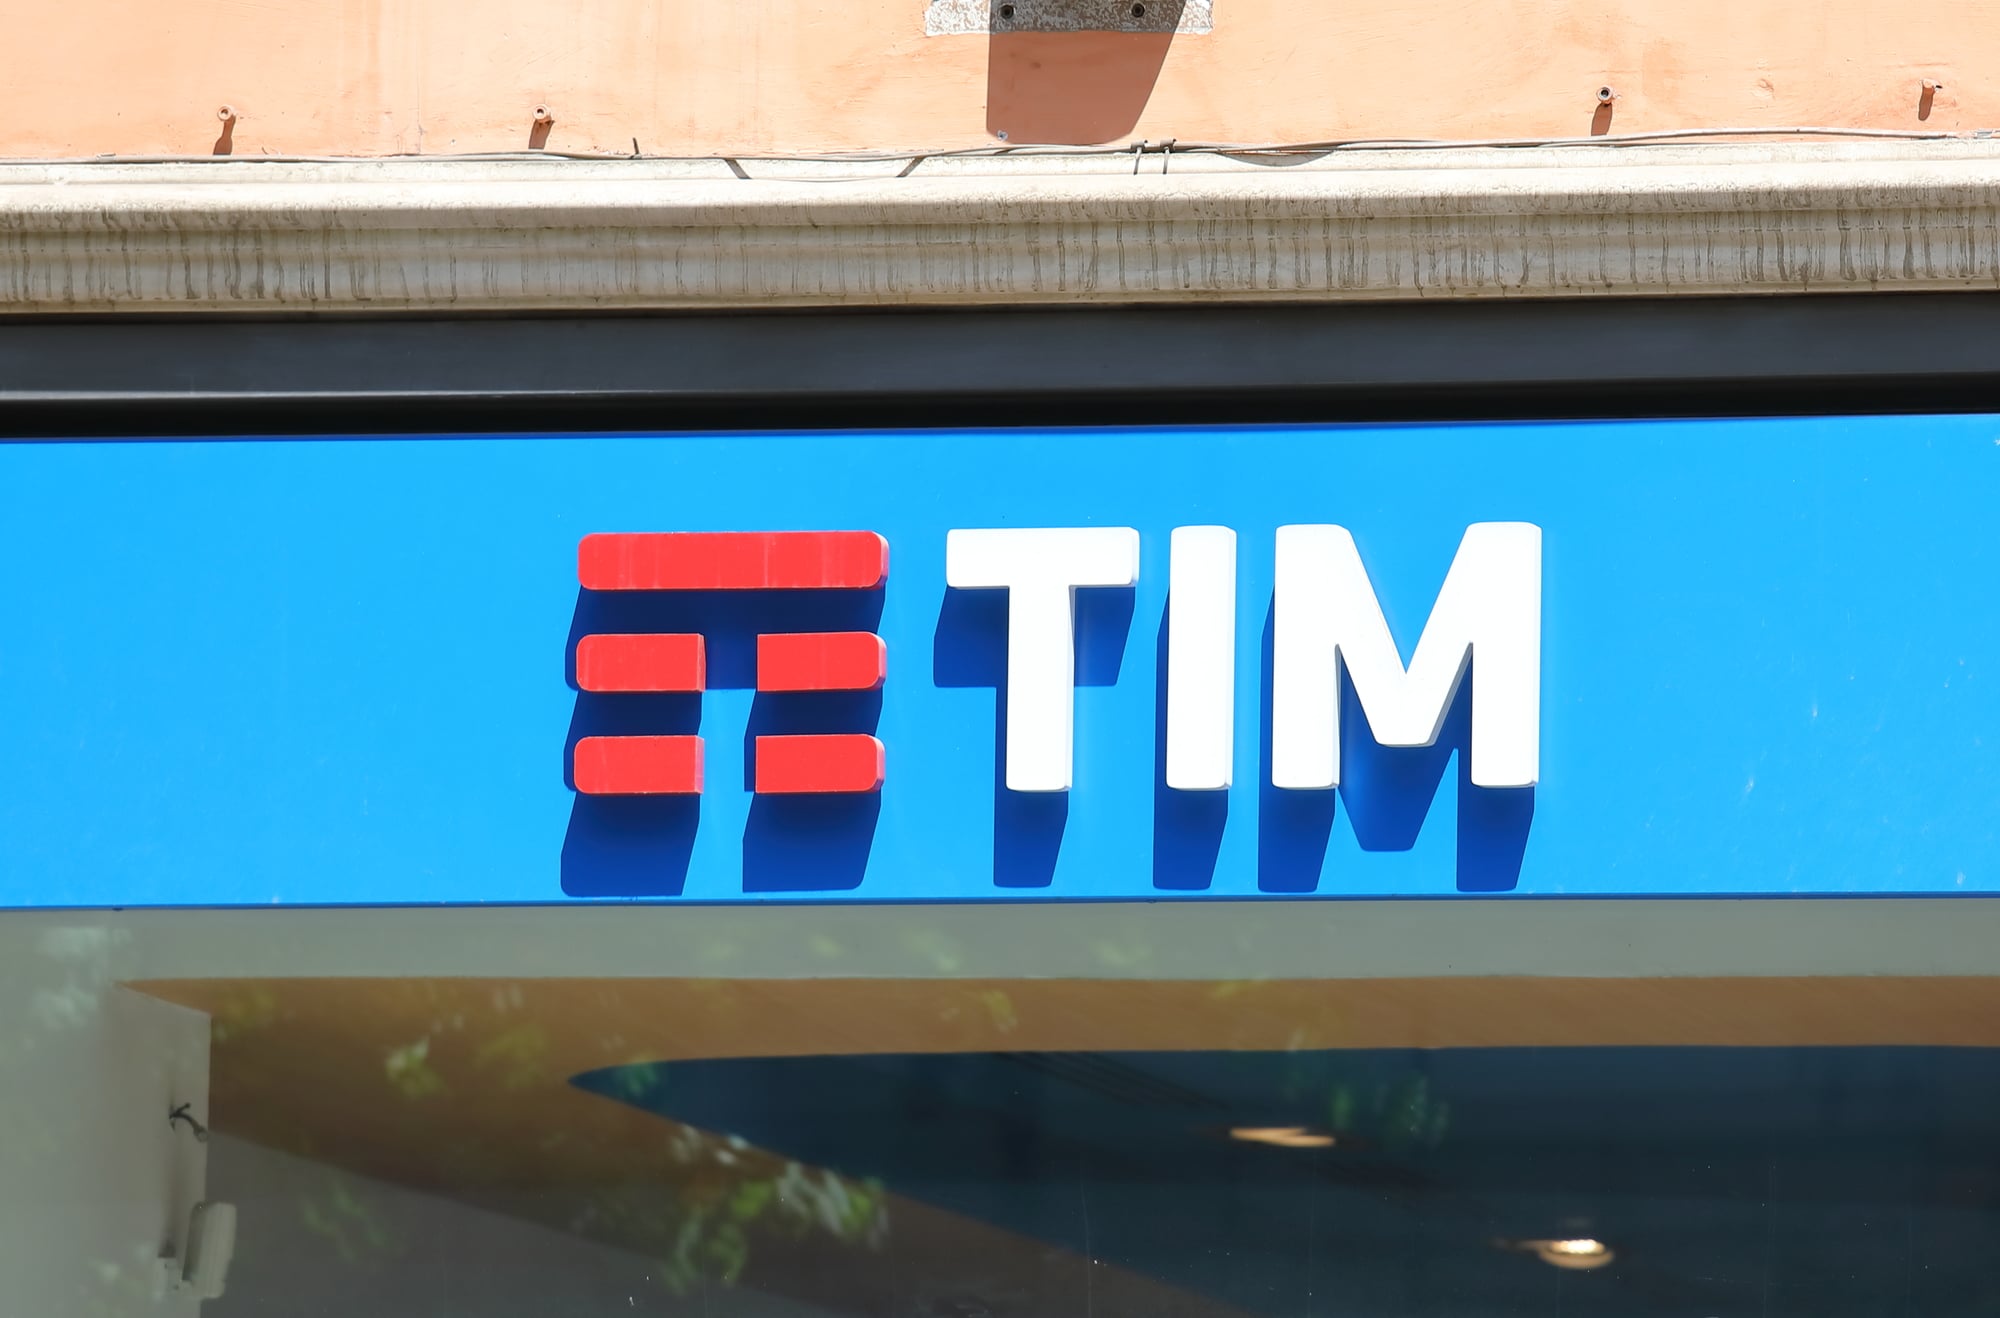 TIM completa la copertura 4G lungo l'Alta Velocità Milano - Bologna thumbnail